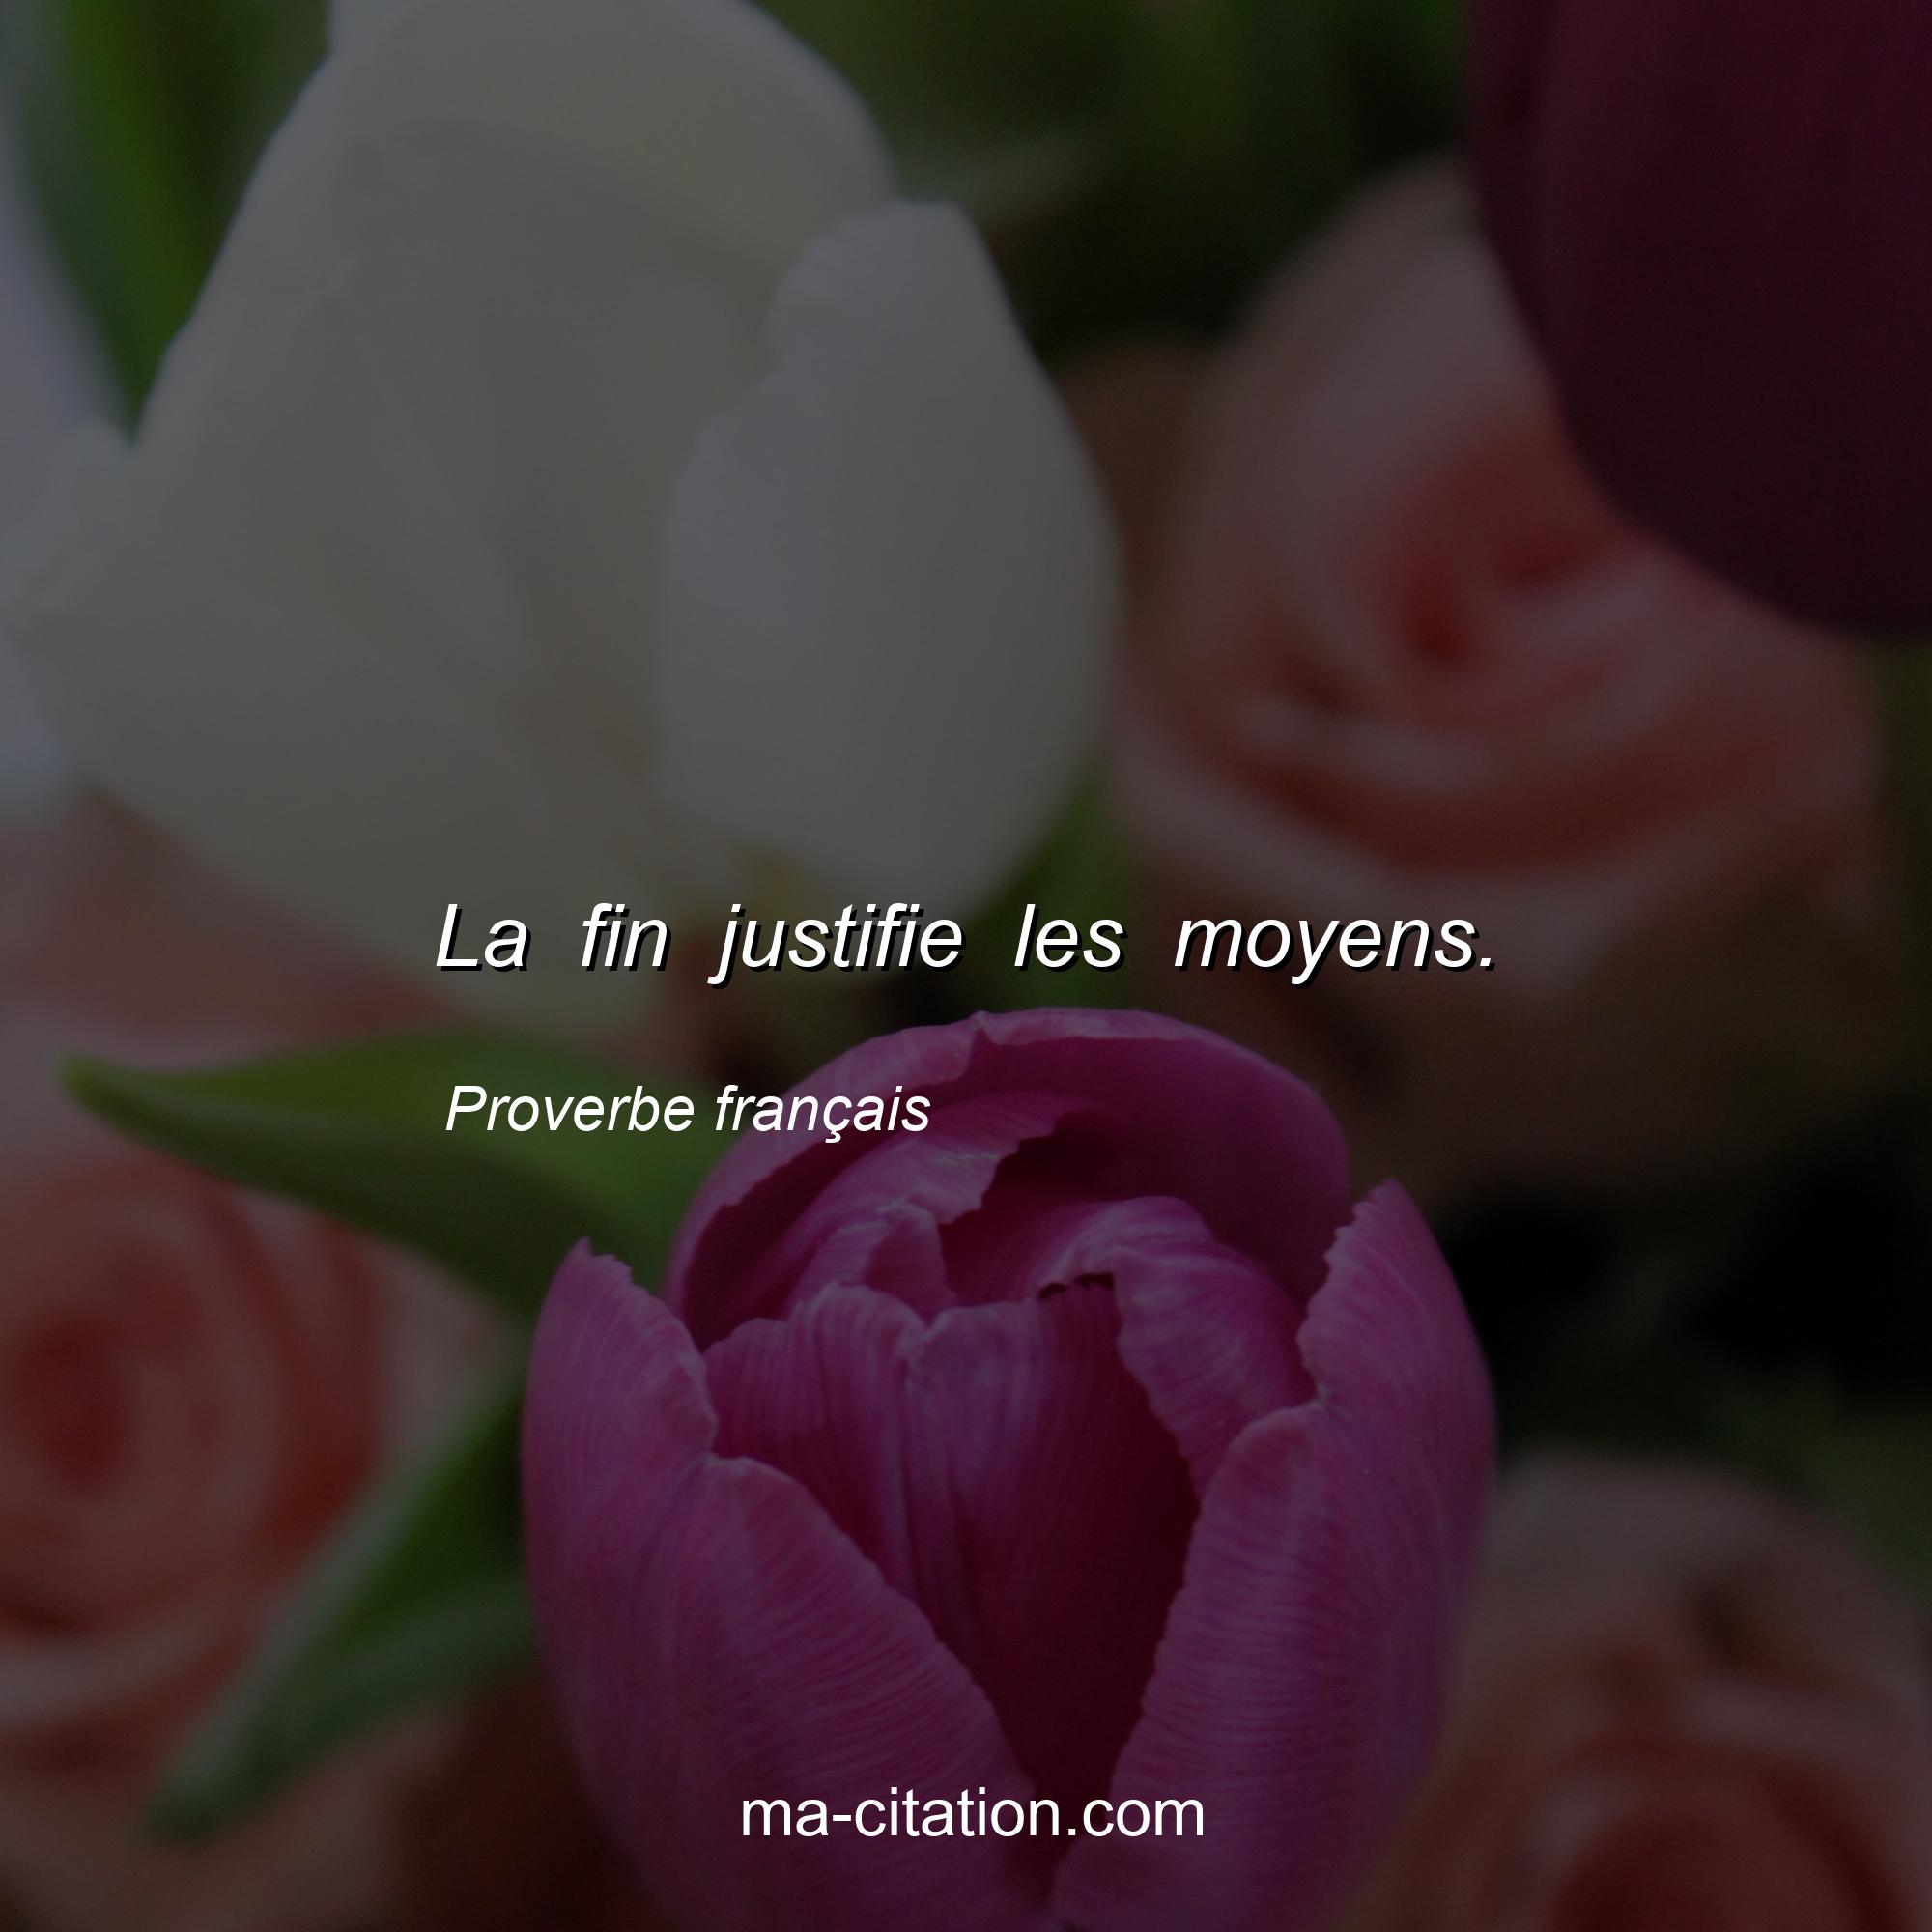 Proverbe français : La fin justifie les moyens.